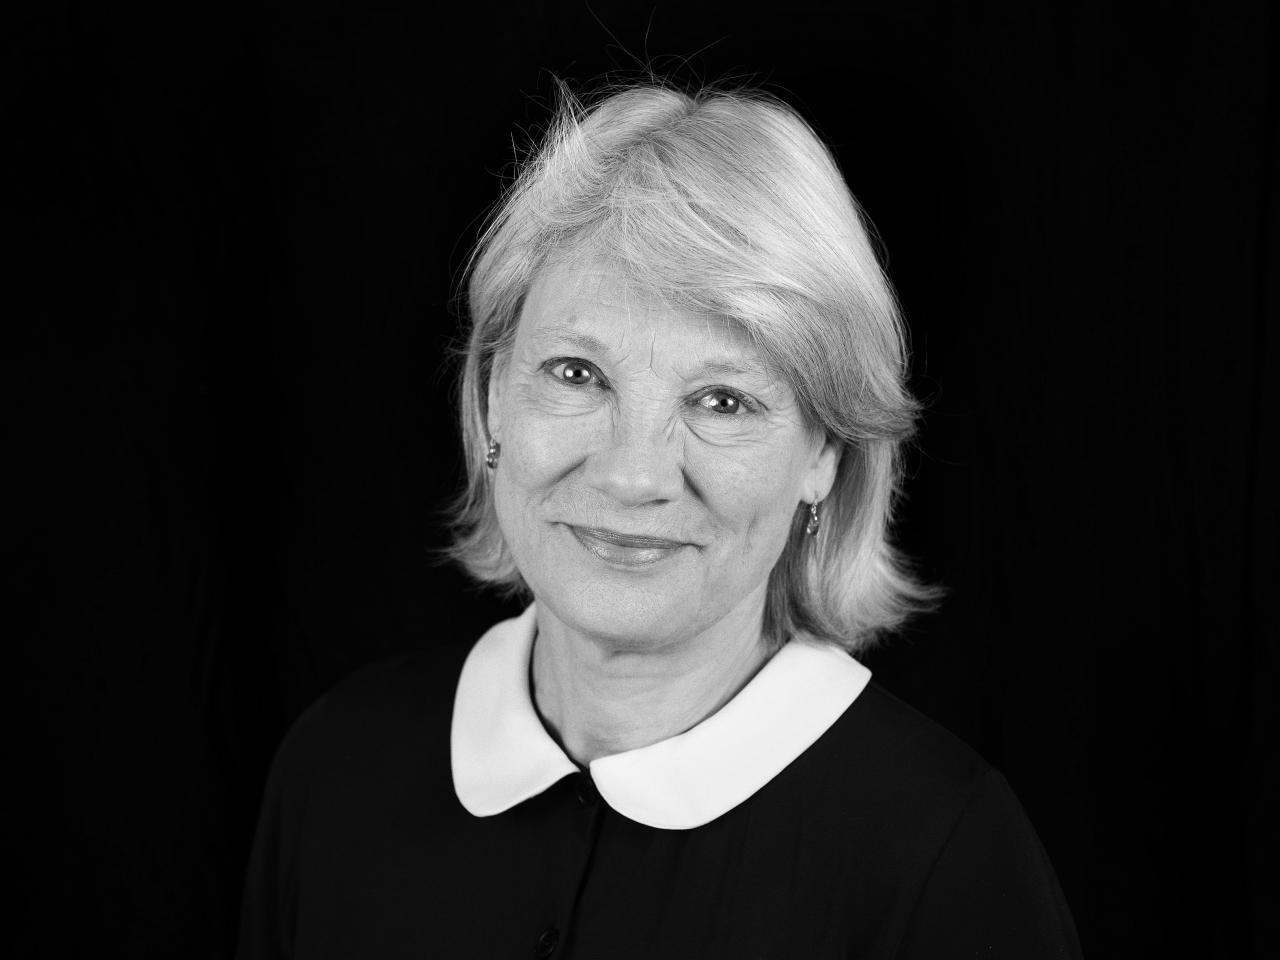 Portretfoto van Andrée van Es in zwart-wit.